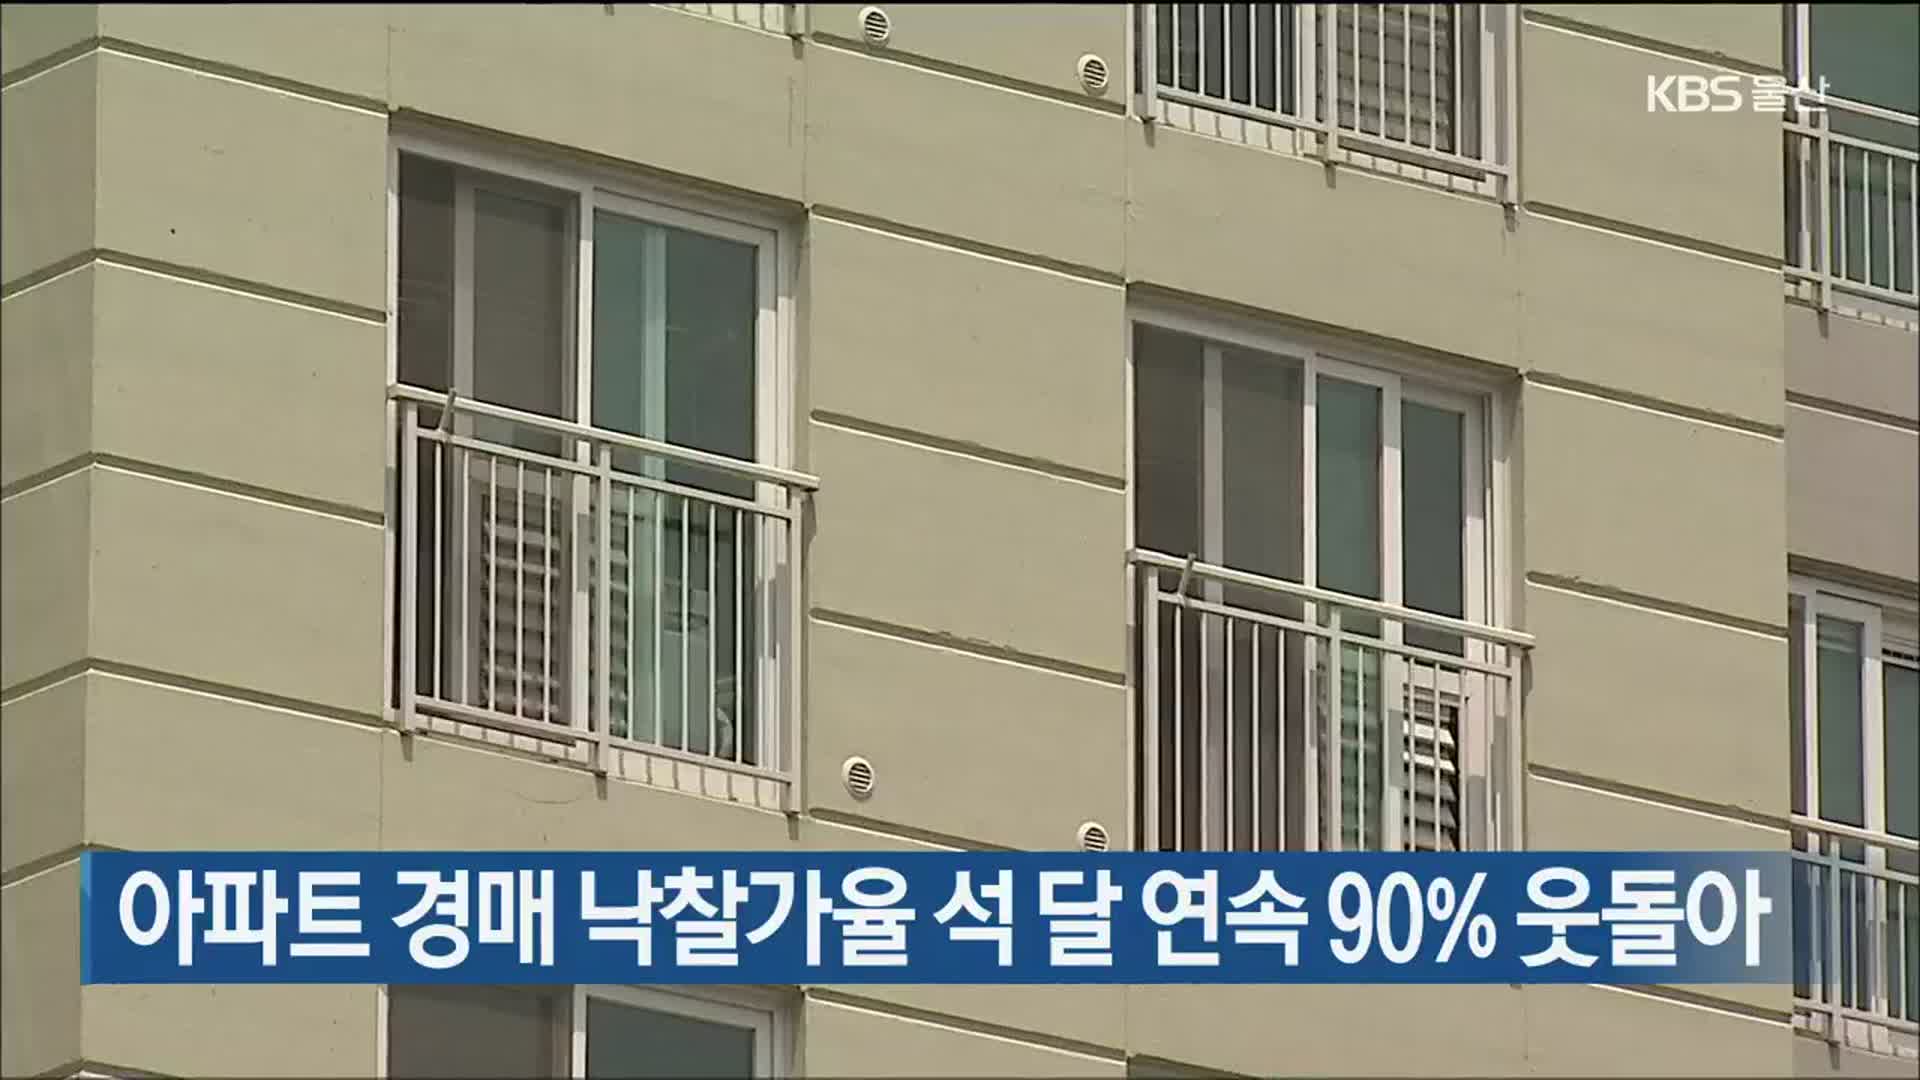 아파트 경매 낙찰가율 석 달 연속 90% 웃돌아  